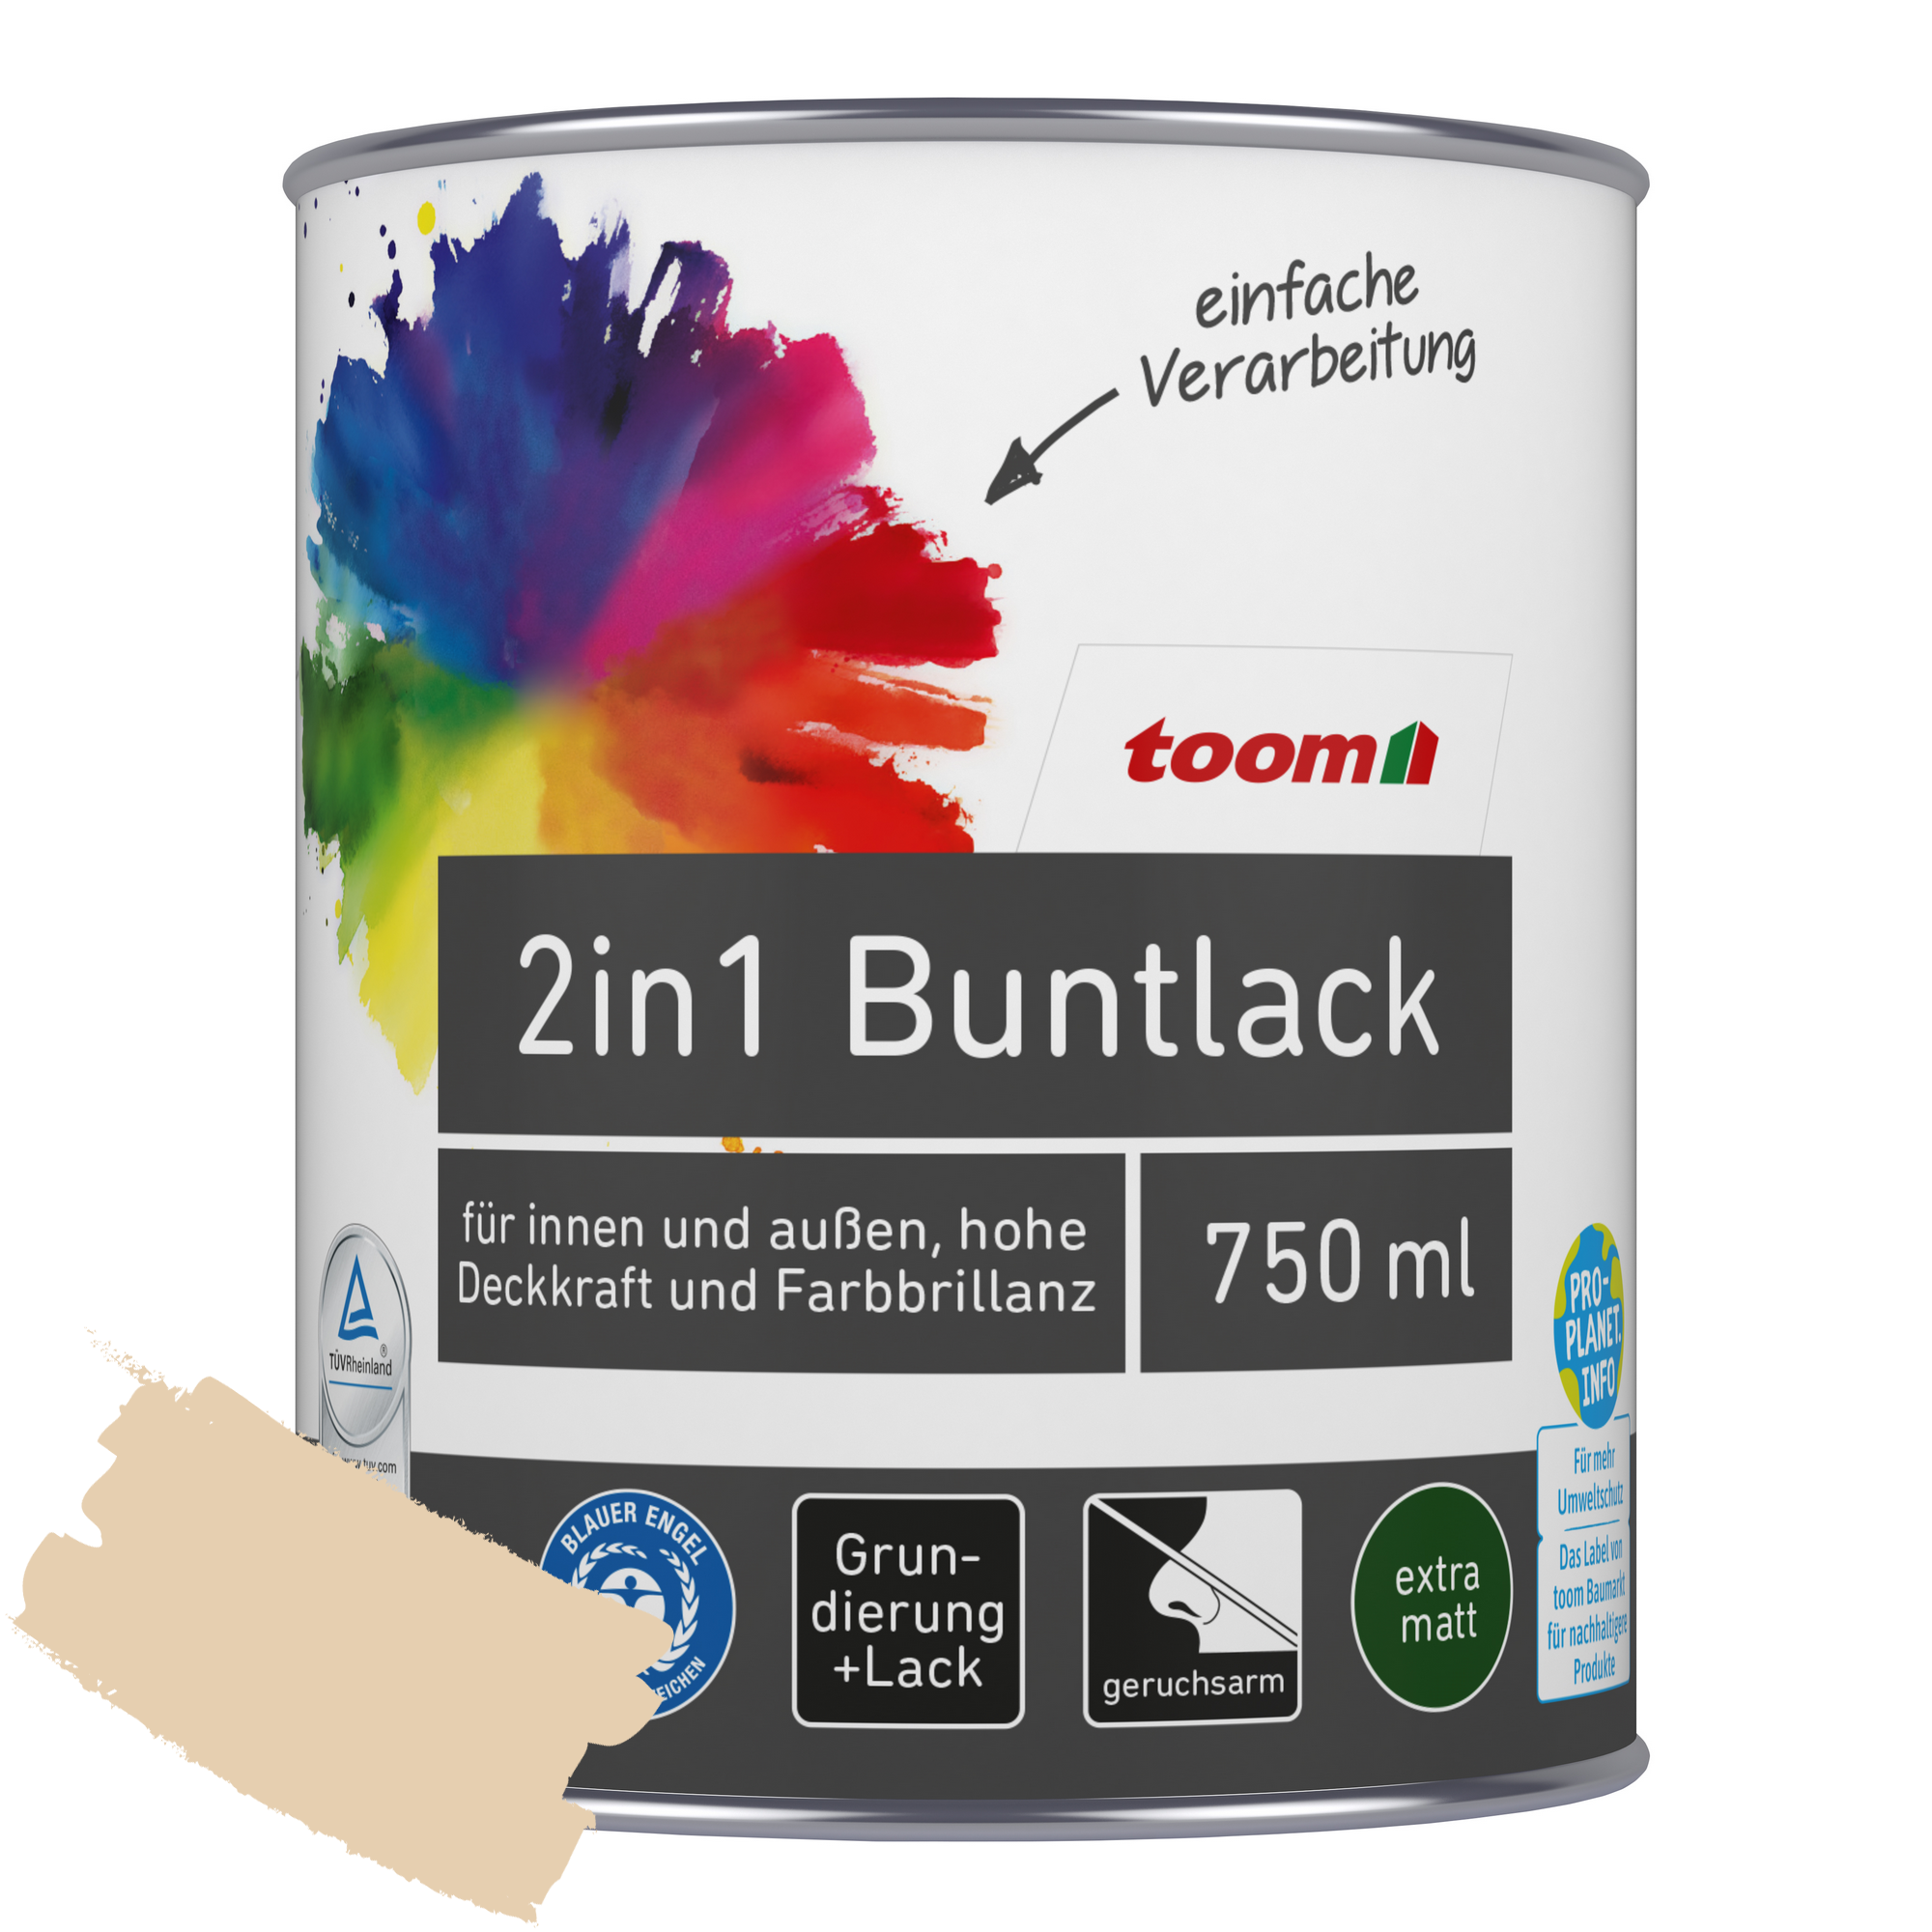 2in1 Buntlack 'Sonnenstrahl' hellelfenbein matt 750 ml + product picture